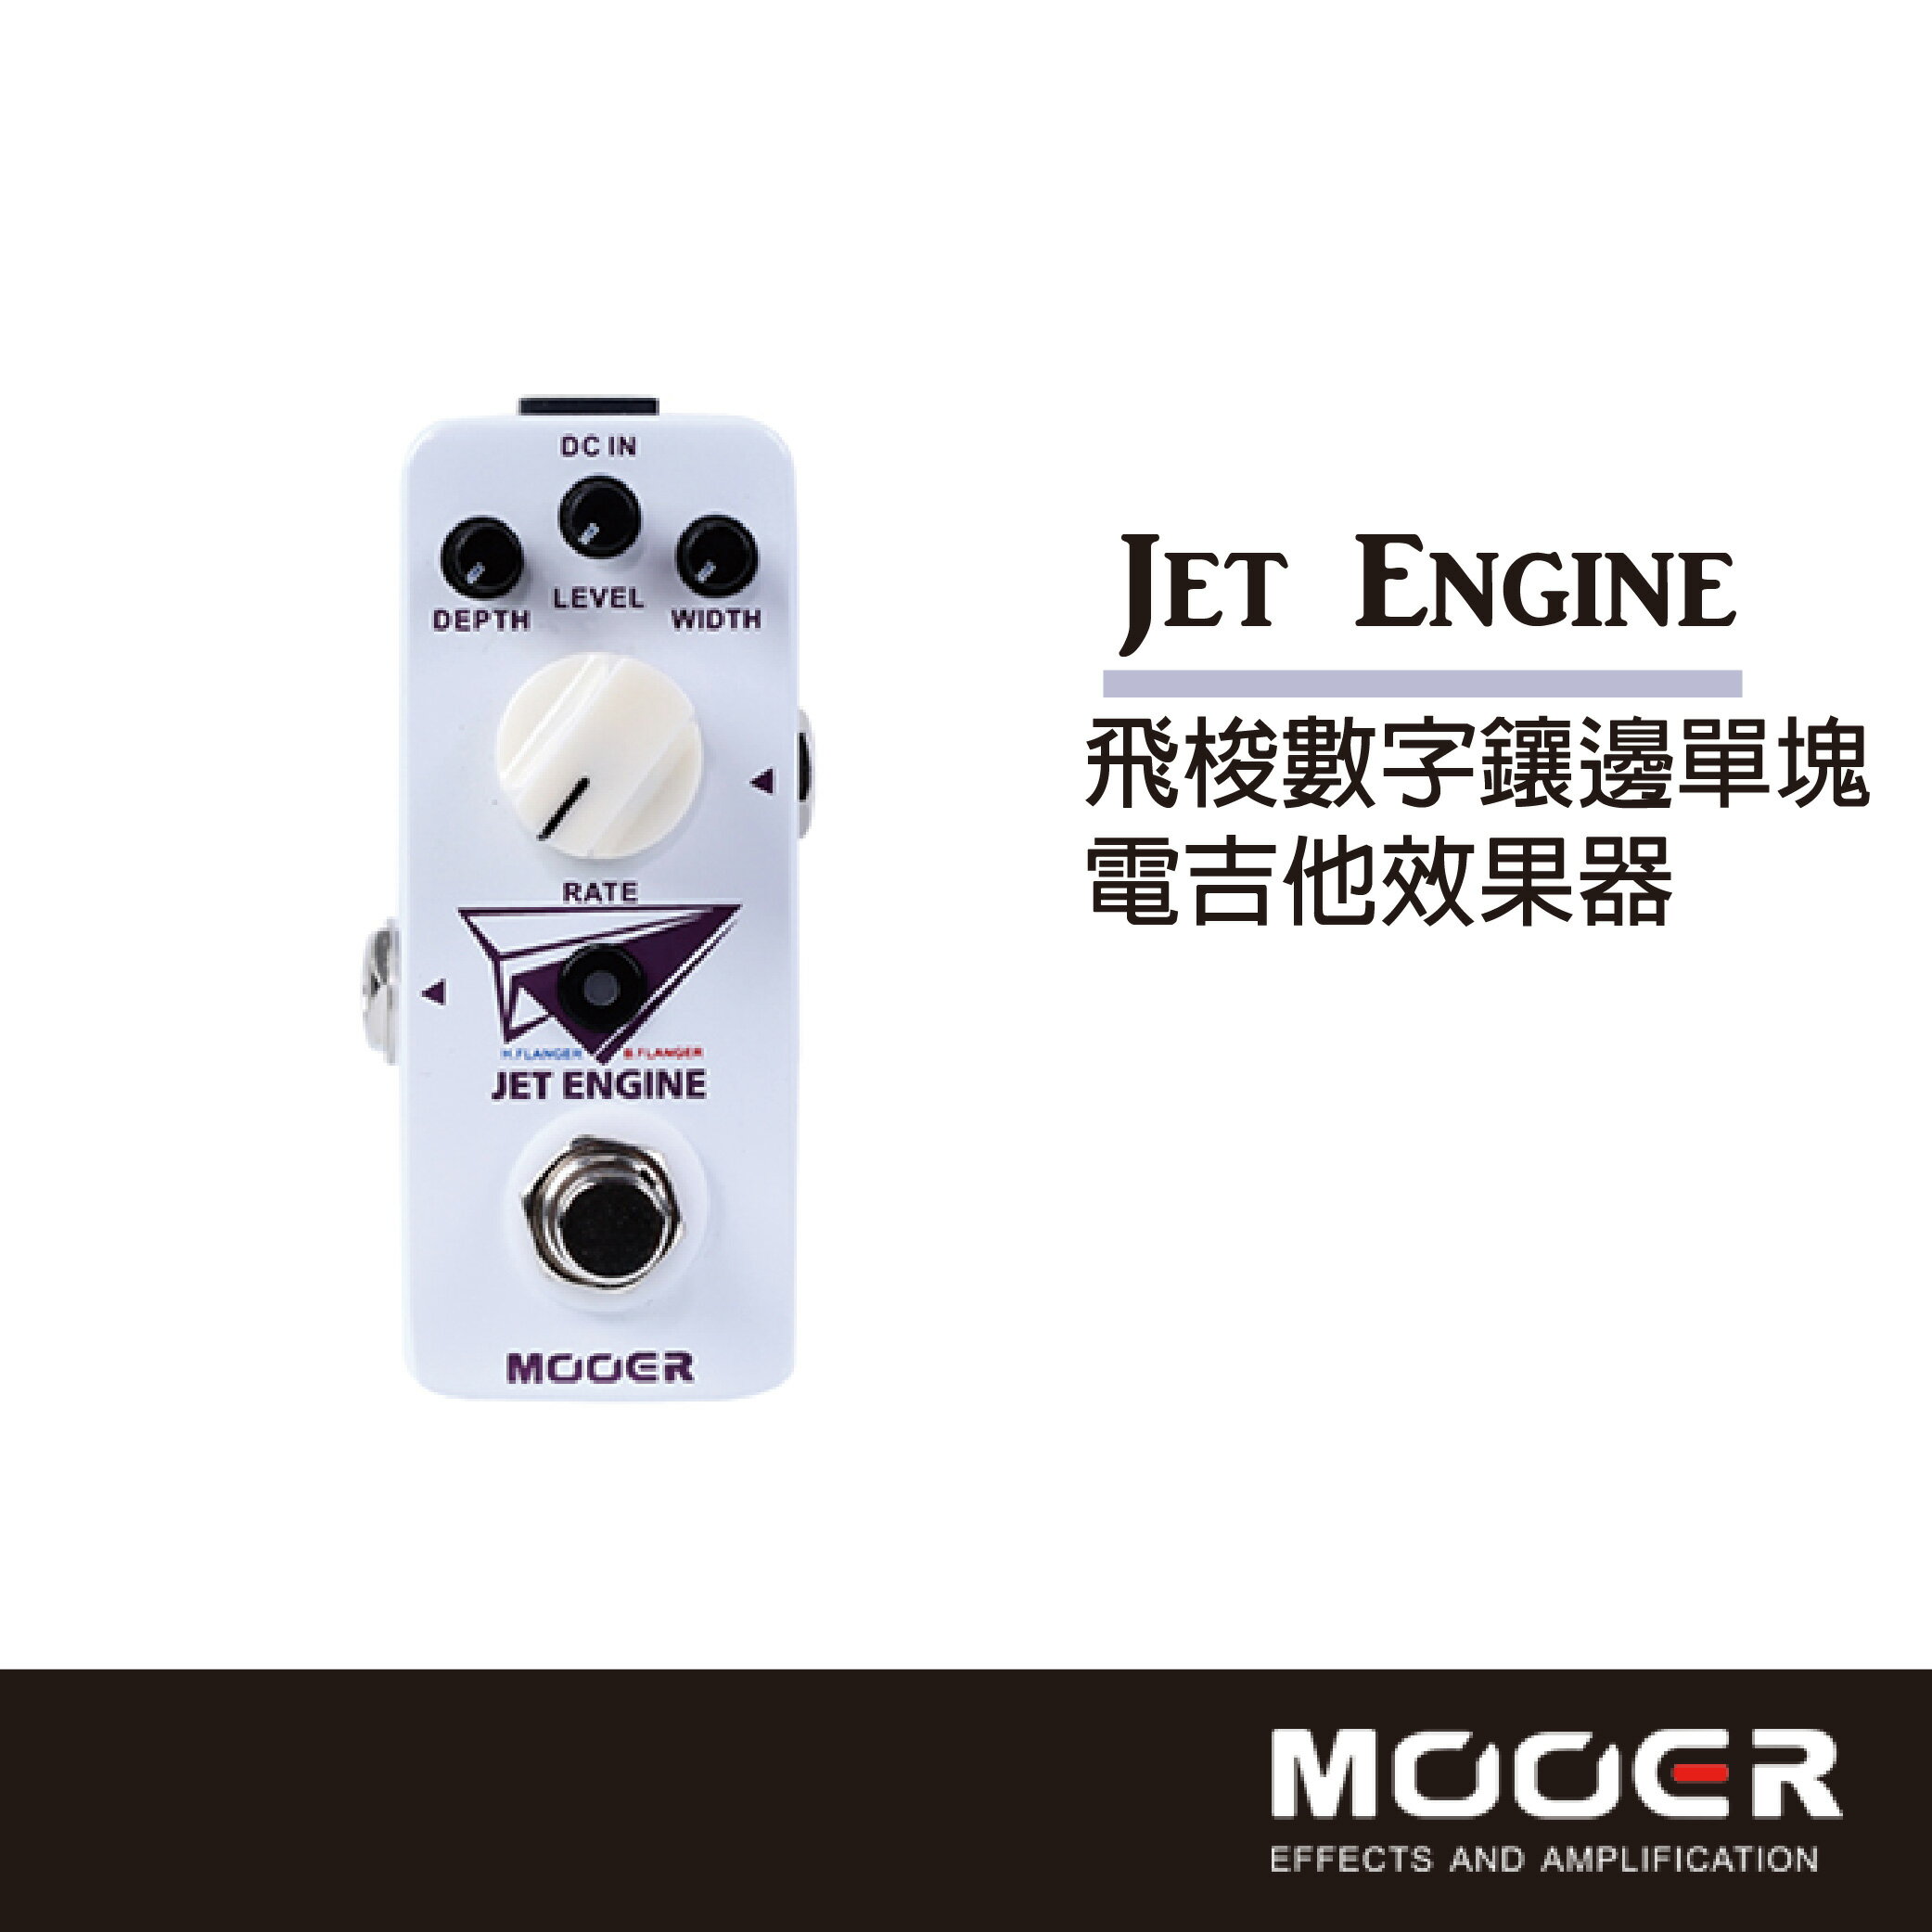 【非凡樂器】MOOER Jet Engine飛梭數字鑲邊單塊電吉他效果器/贈導線/公司貨